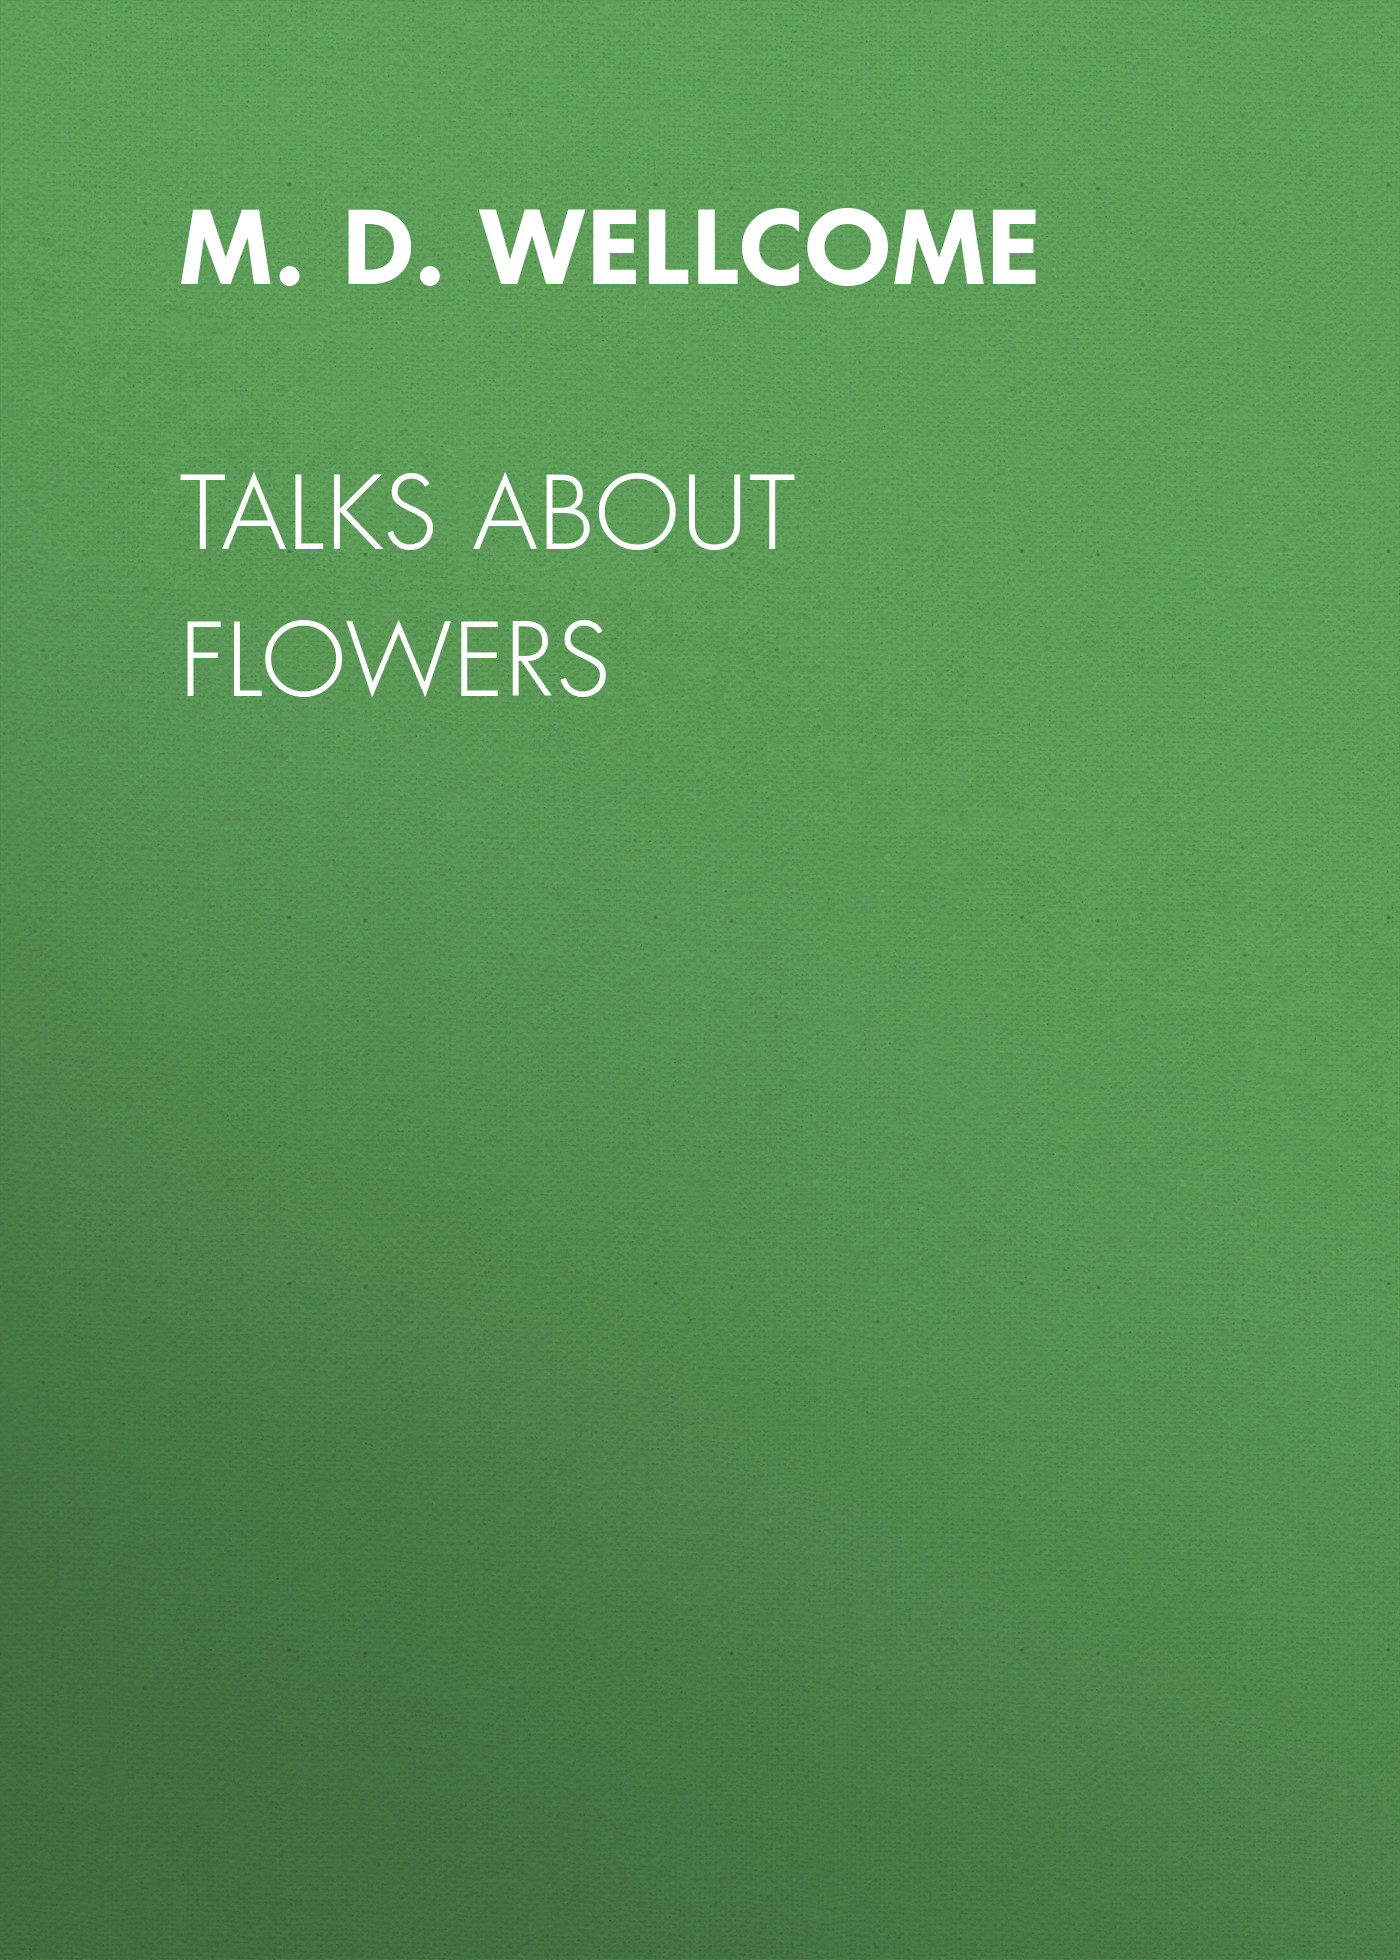 Книга Talks About Flowers из серии , созданная M. D. Wellcome, может относится к жанру Зарубежная старинная литература, Биология, Биология, Зарубежная образовательная литература. Стоимость электронной книги Talks About Flowers с идентификатором 34336810 составляет 0 руб.